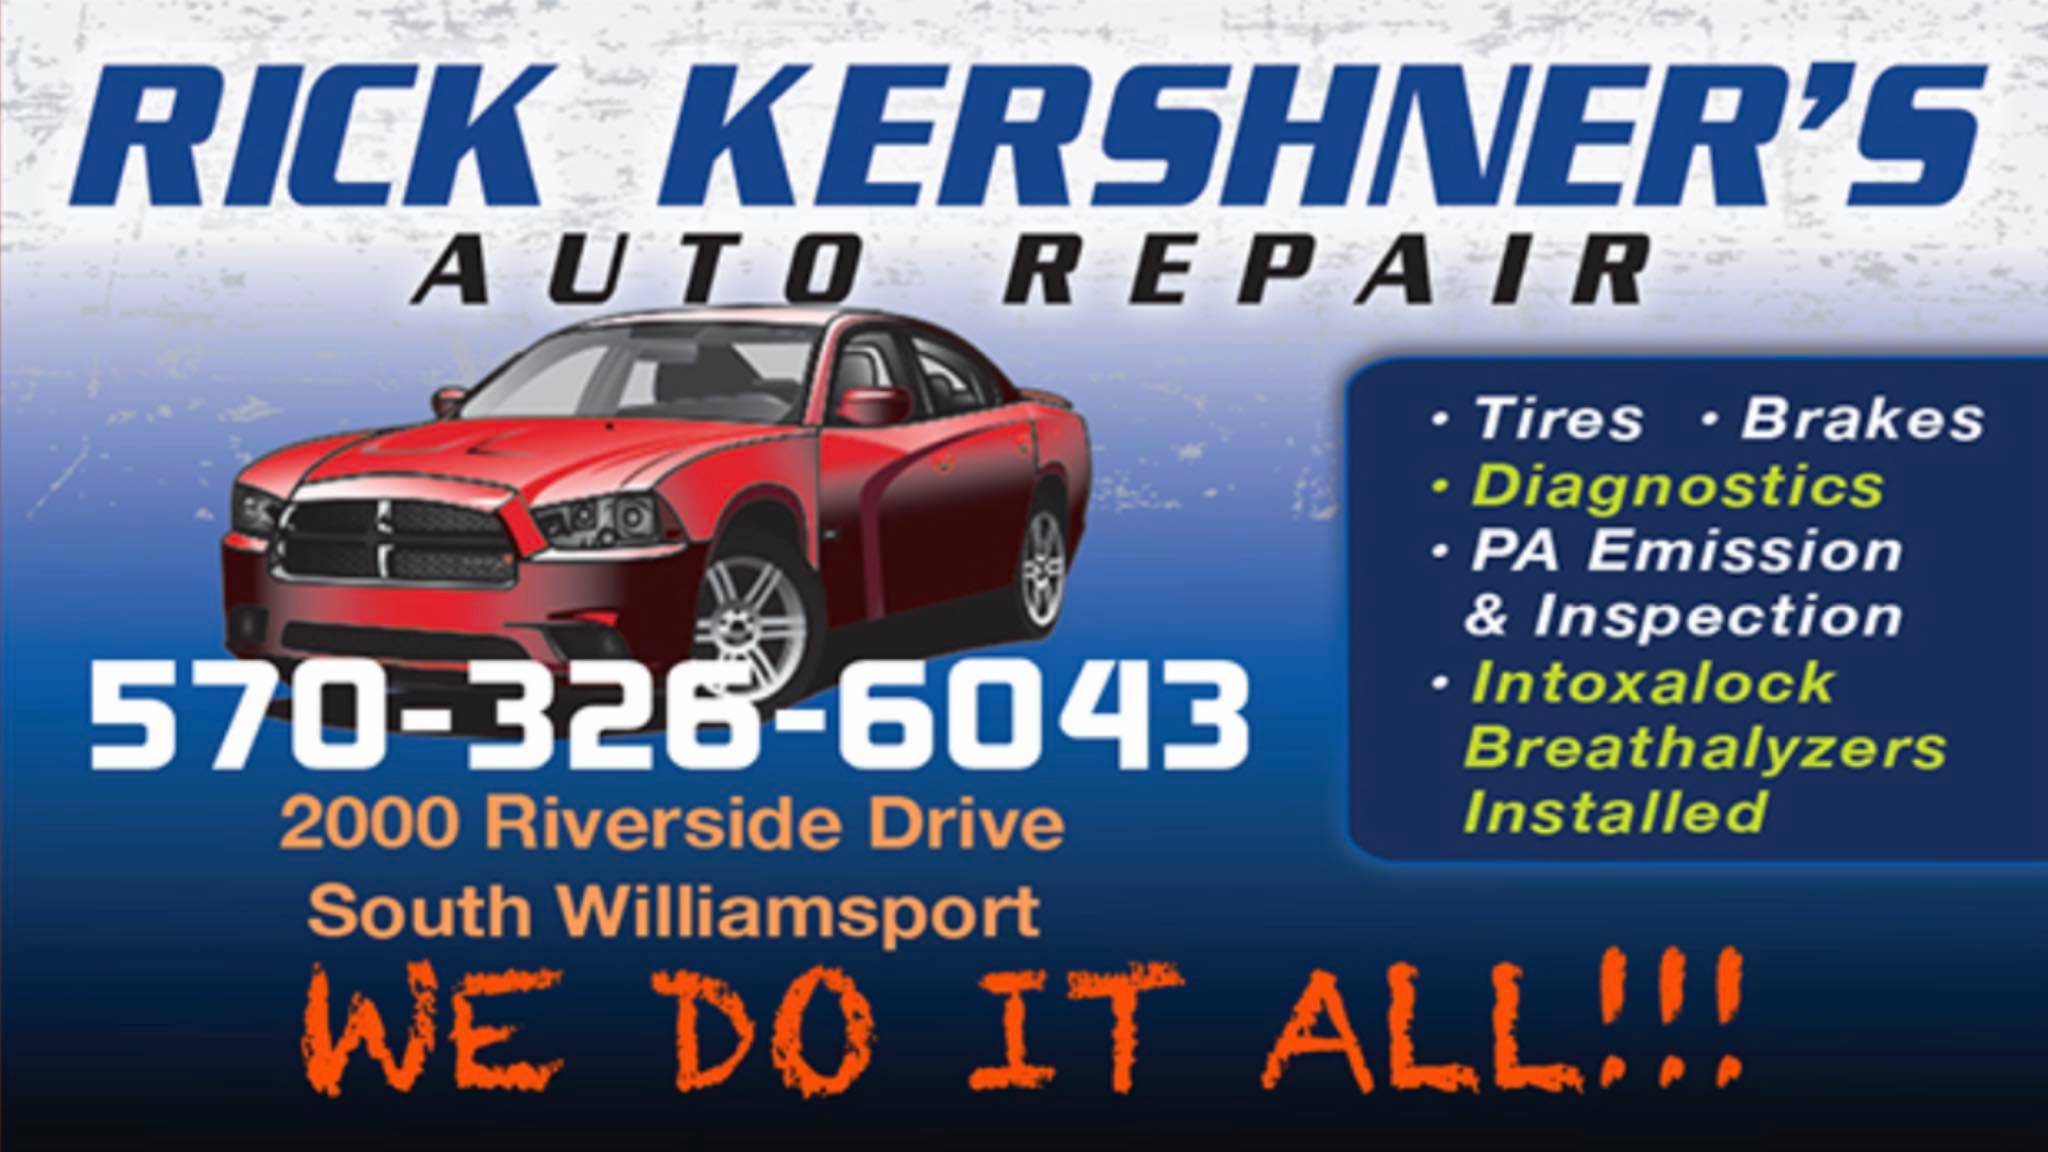 Rick Kershner's Auto Repair